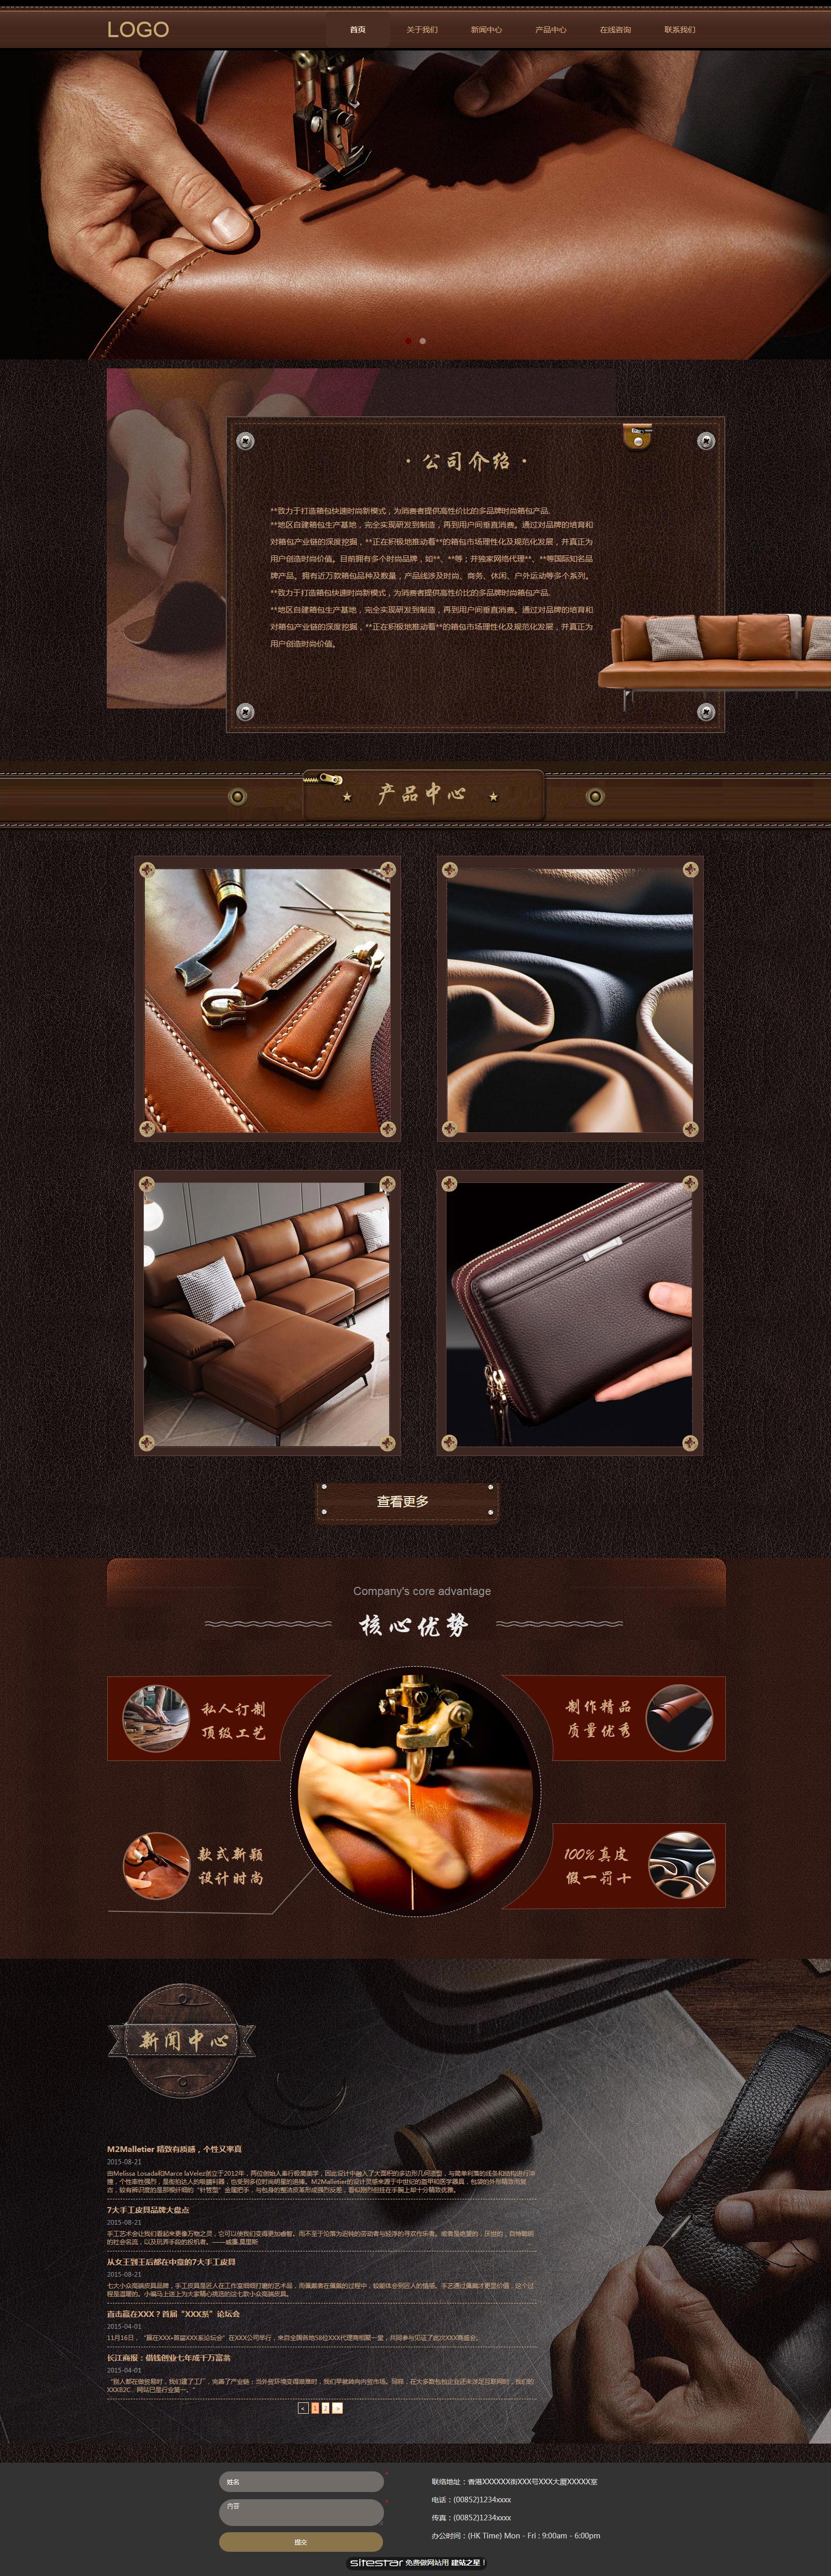 企业网站精美模板-leather-1068838